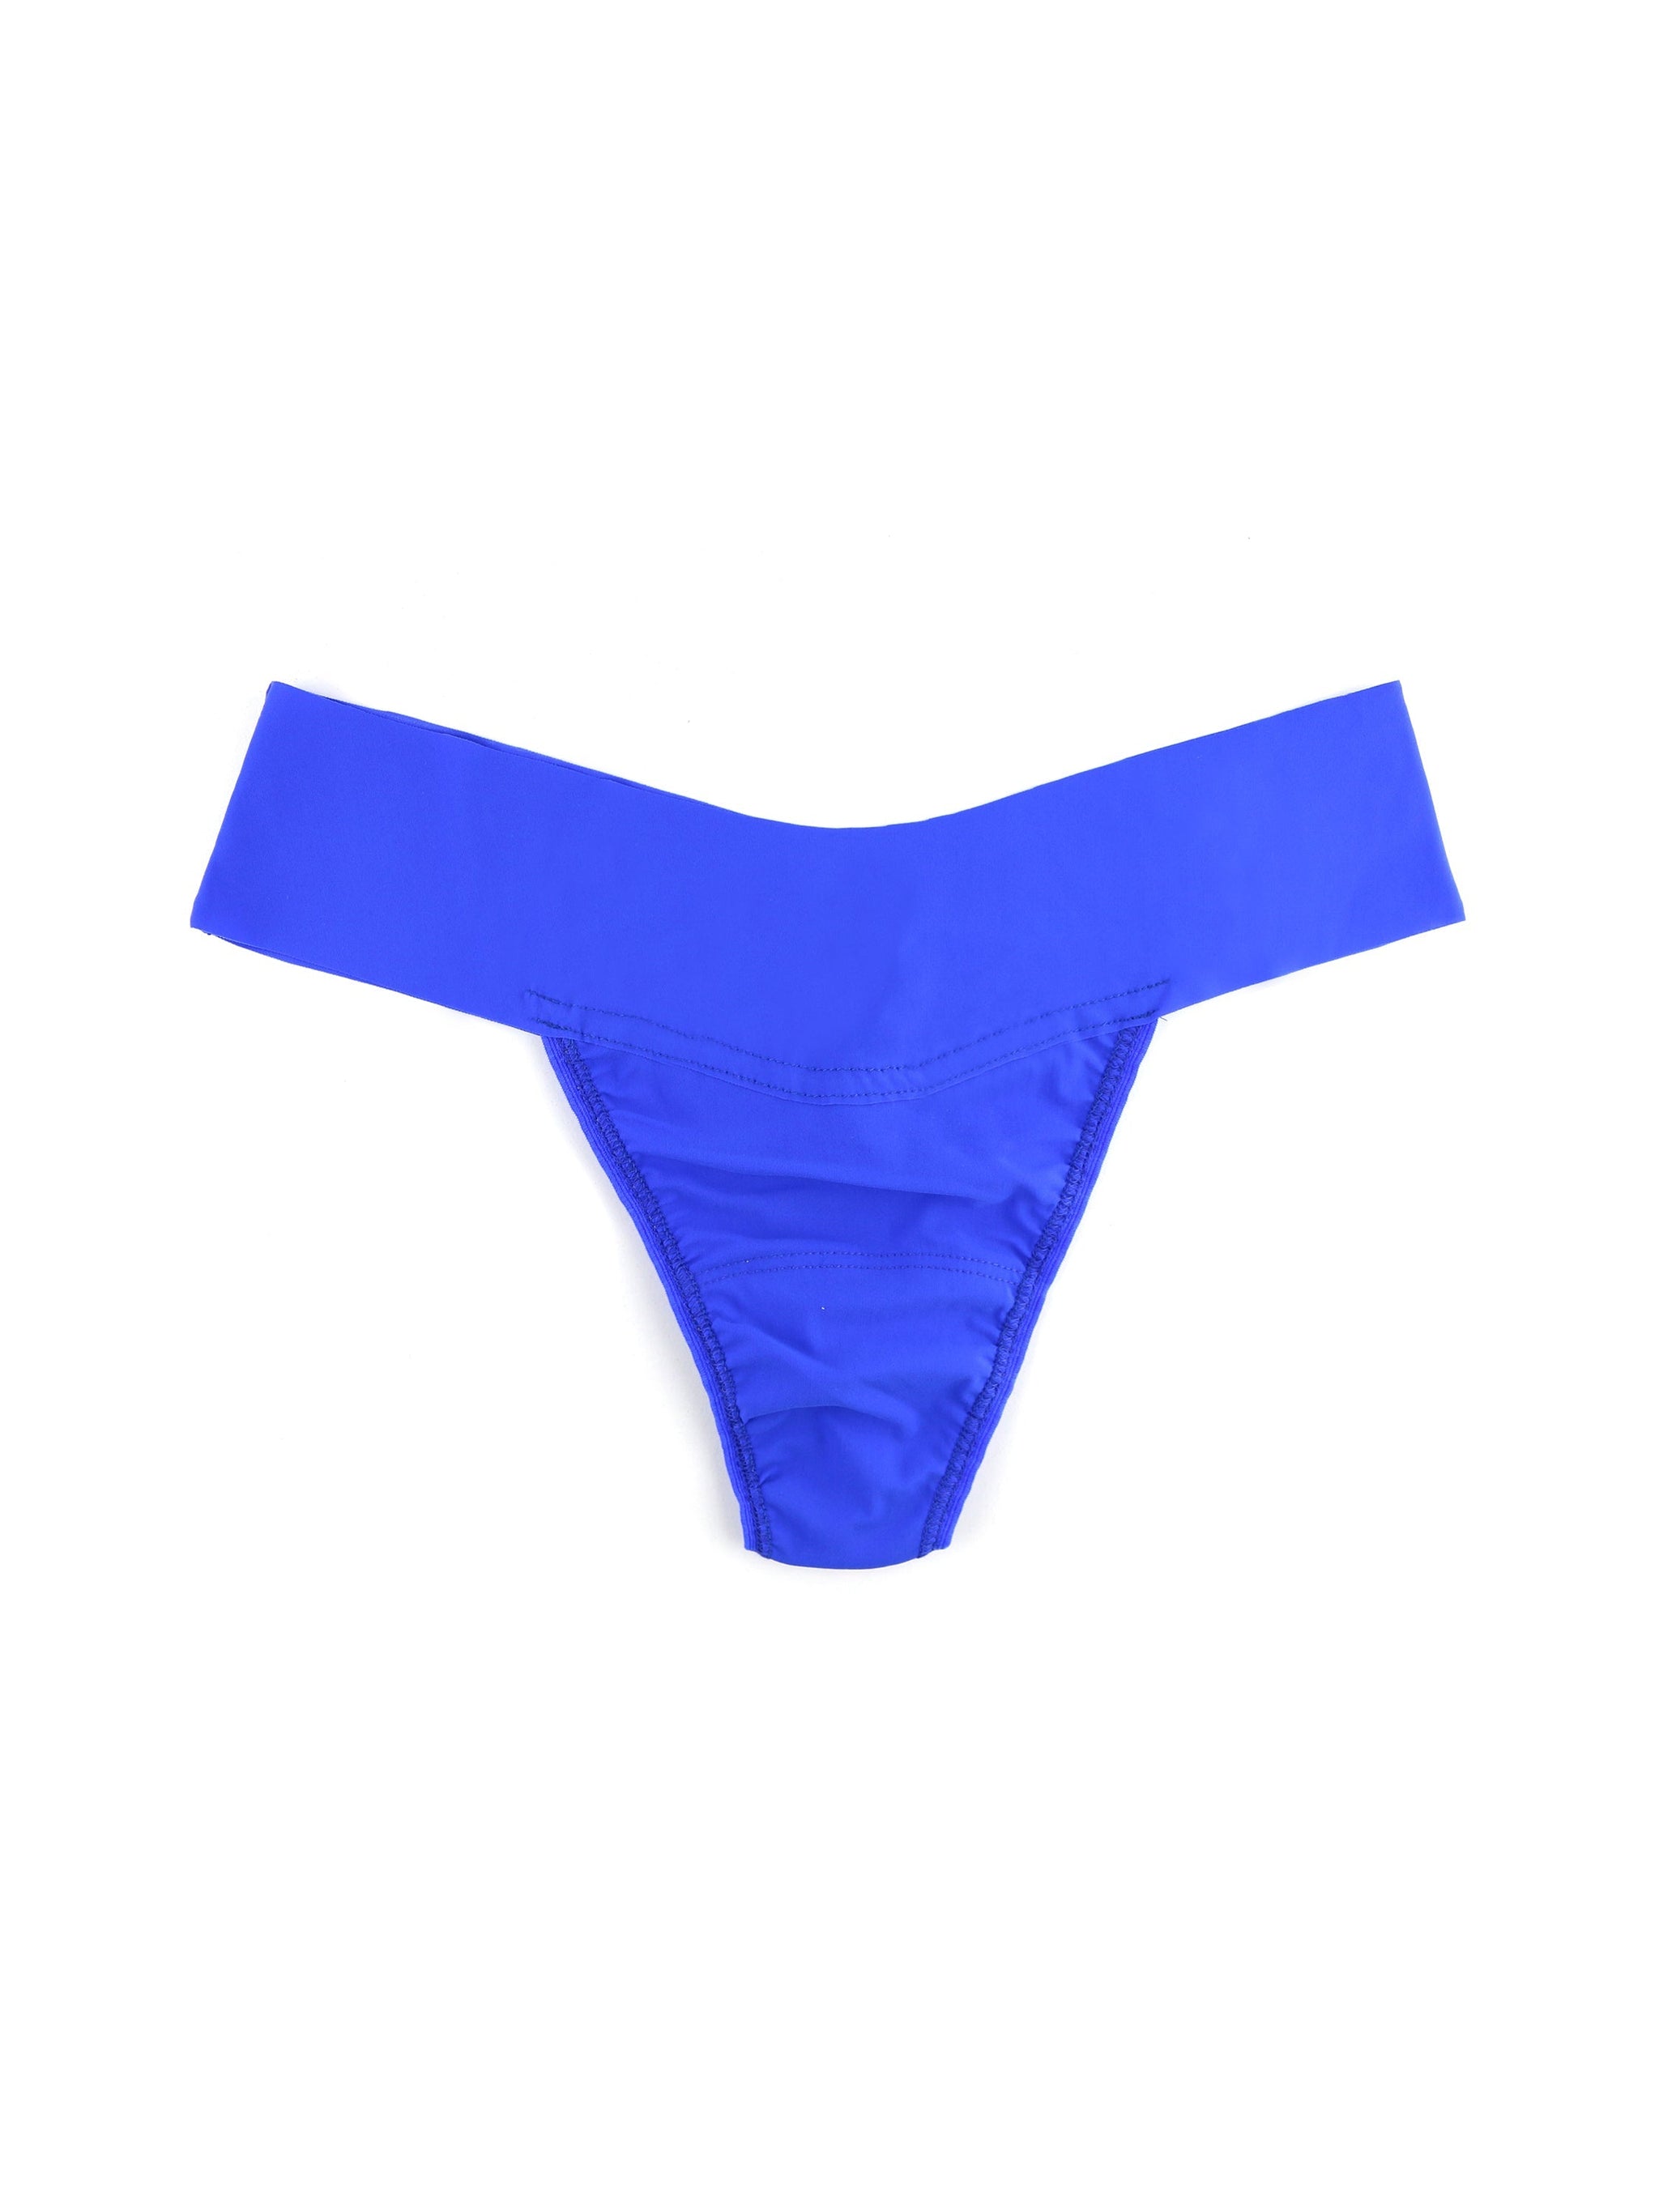 JUDYSTORE【4pcs/box】Liangzuo Swam Cotton Panties Mid-waist